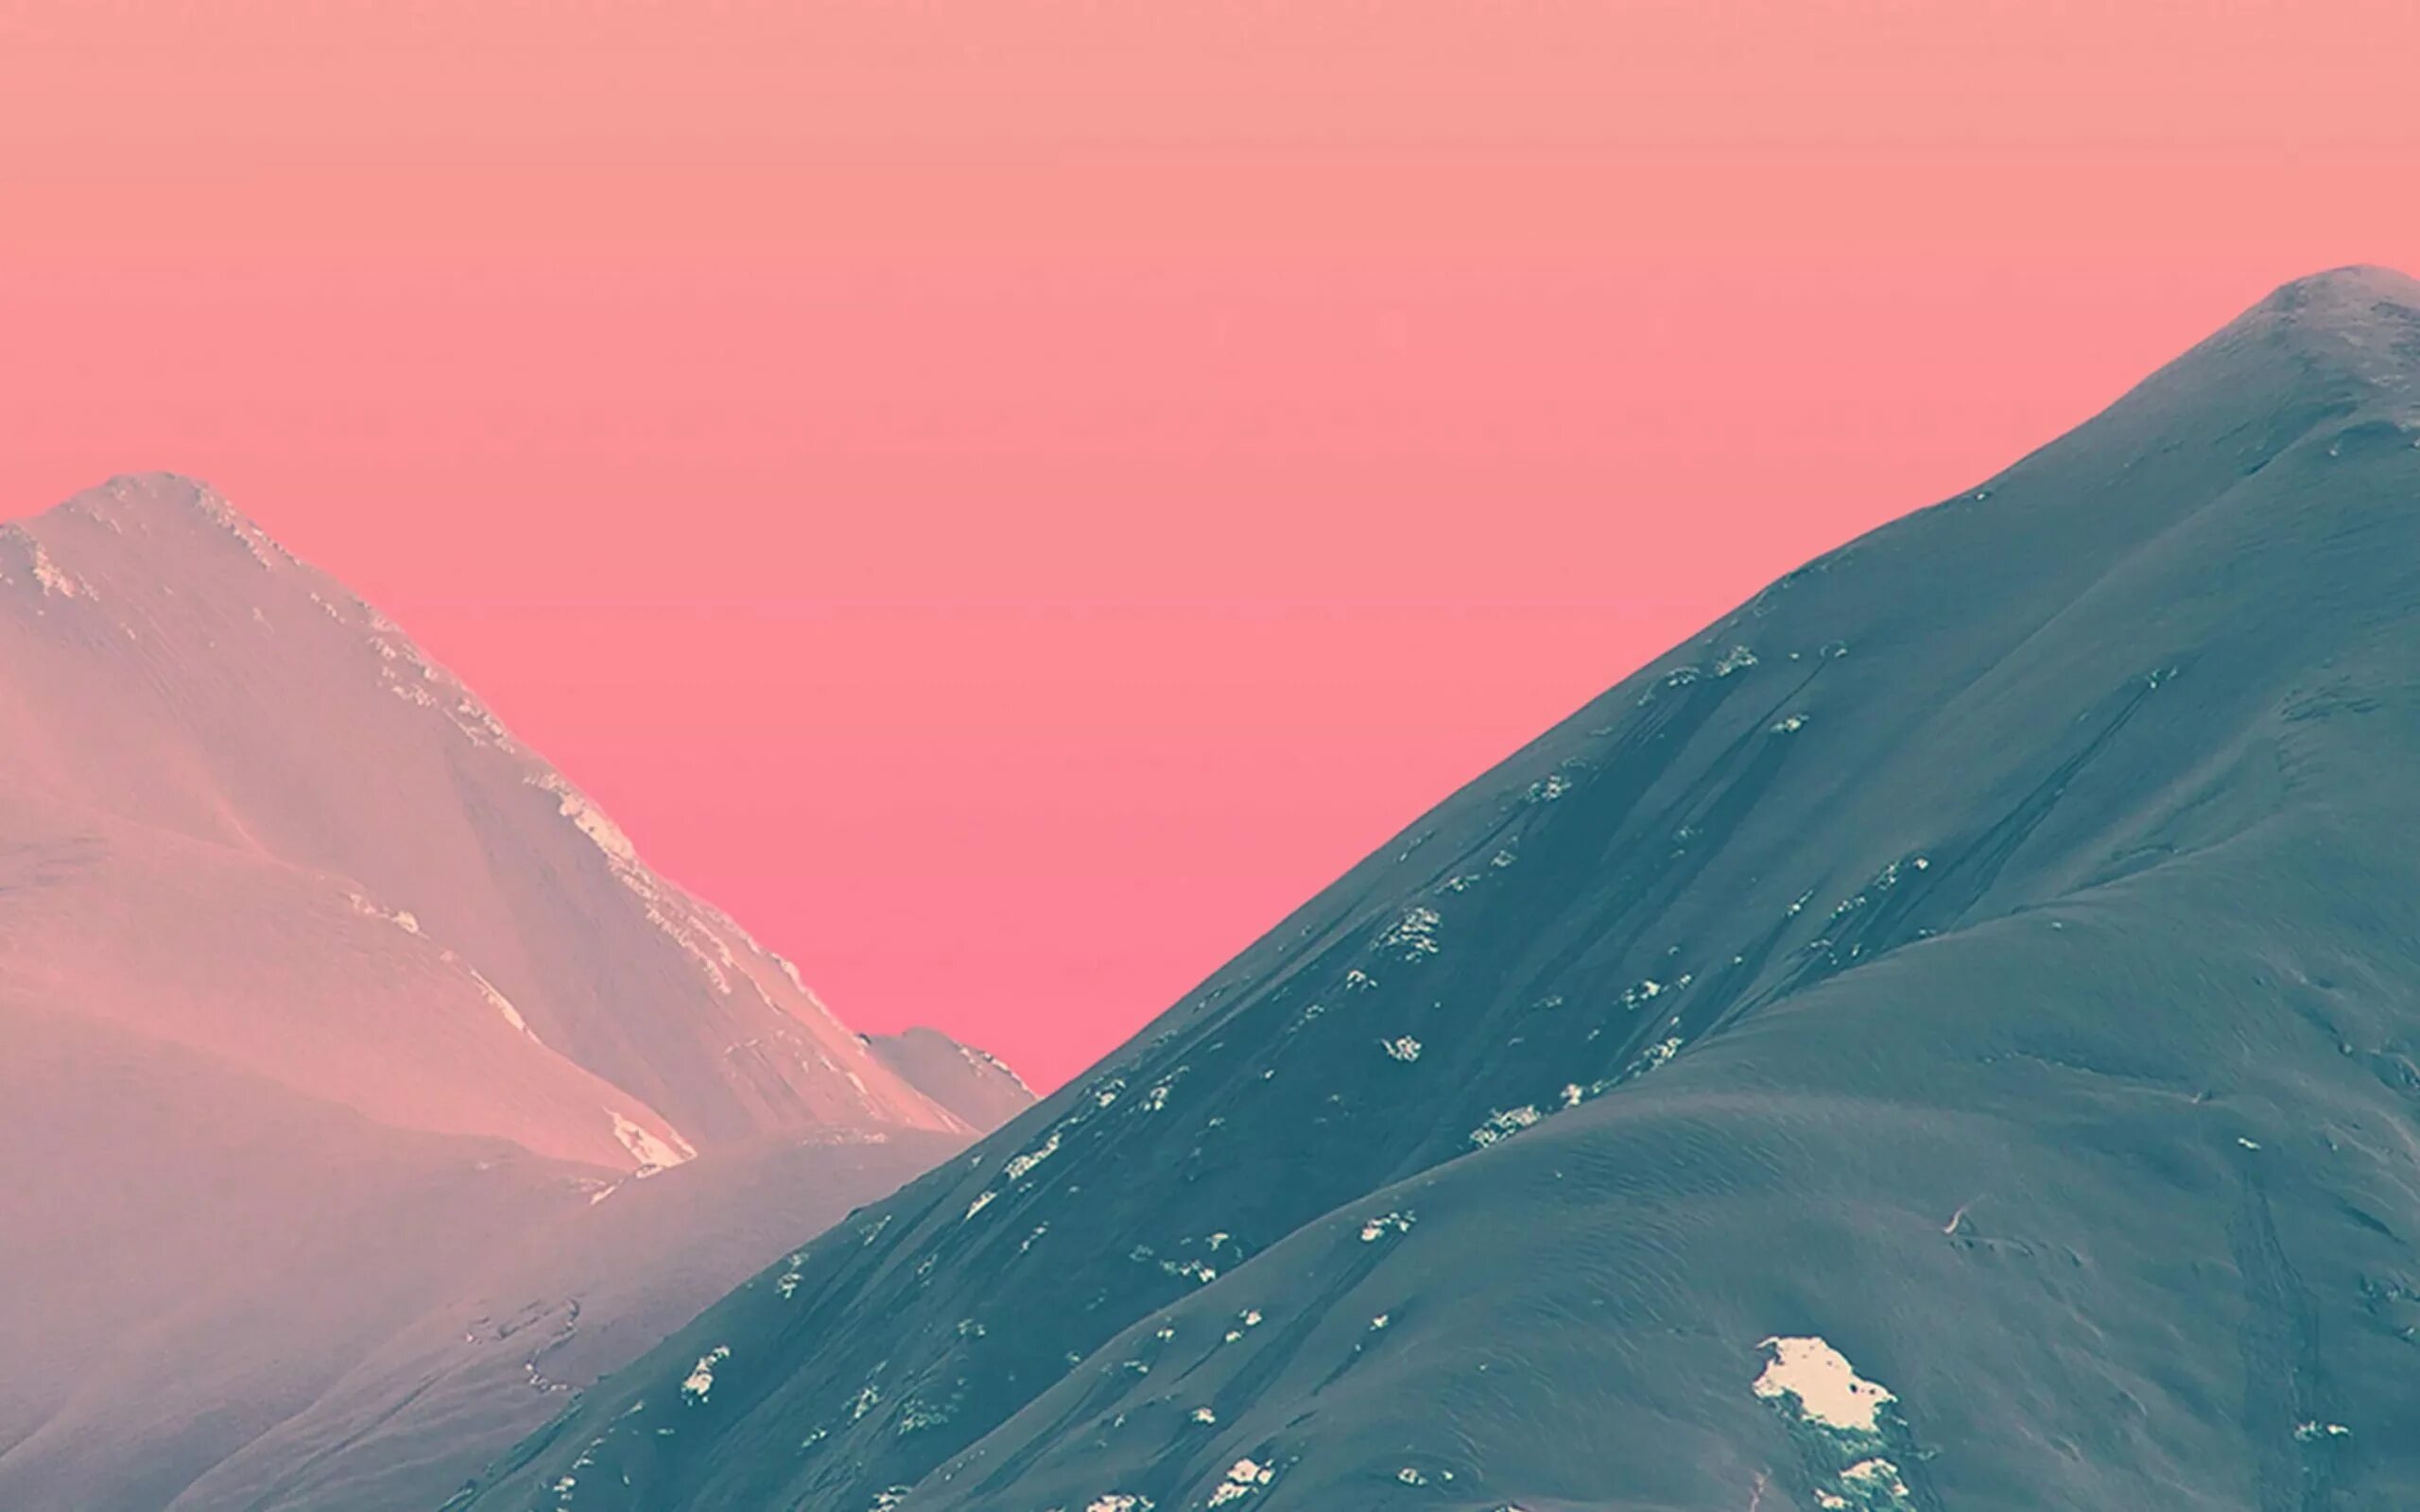 Обои на компьютер из пинтереста. Горы. Розовые горы. Фон горы. Эстетический фон.